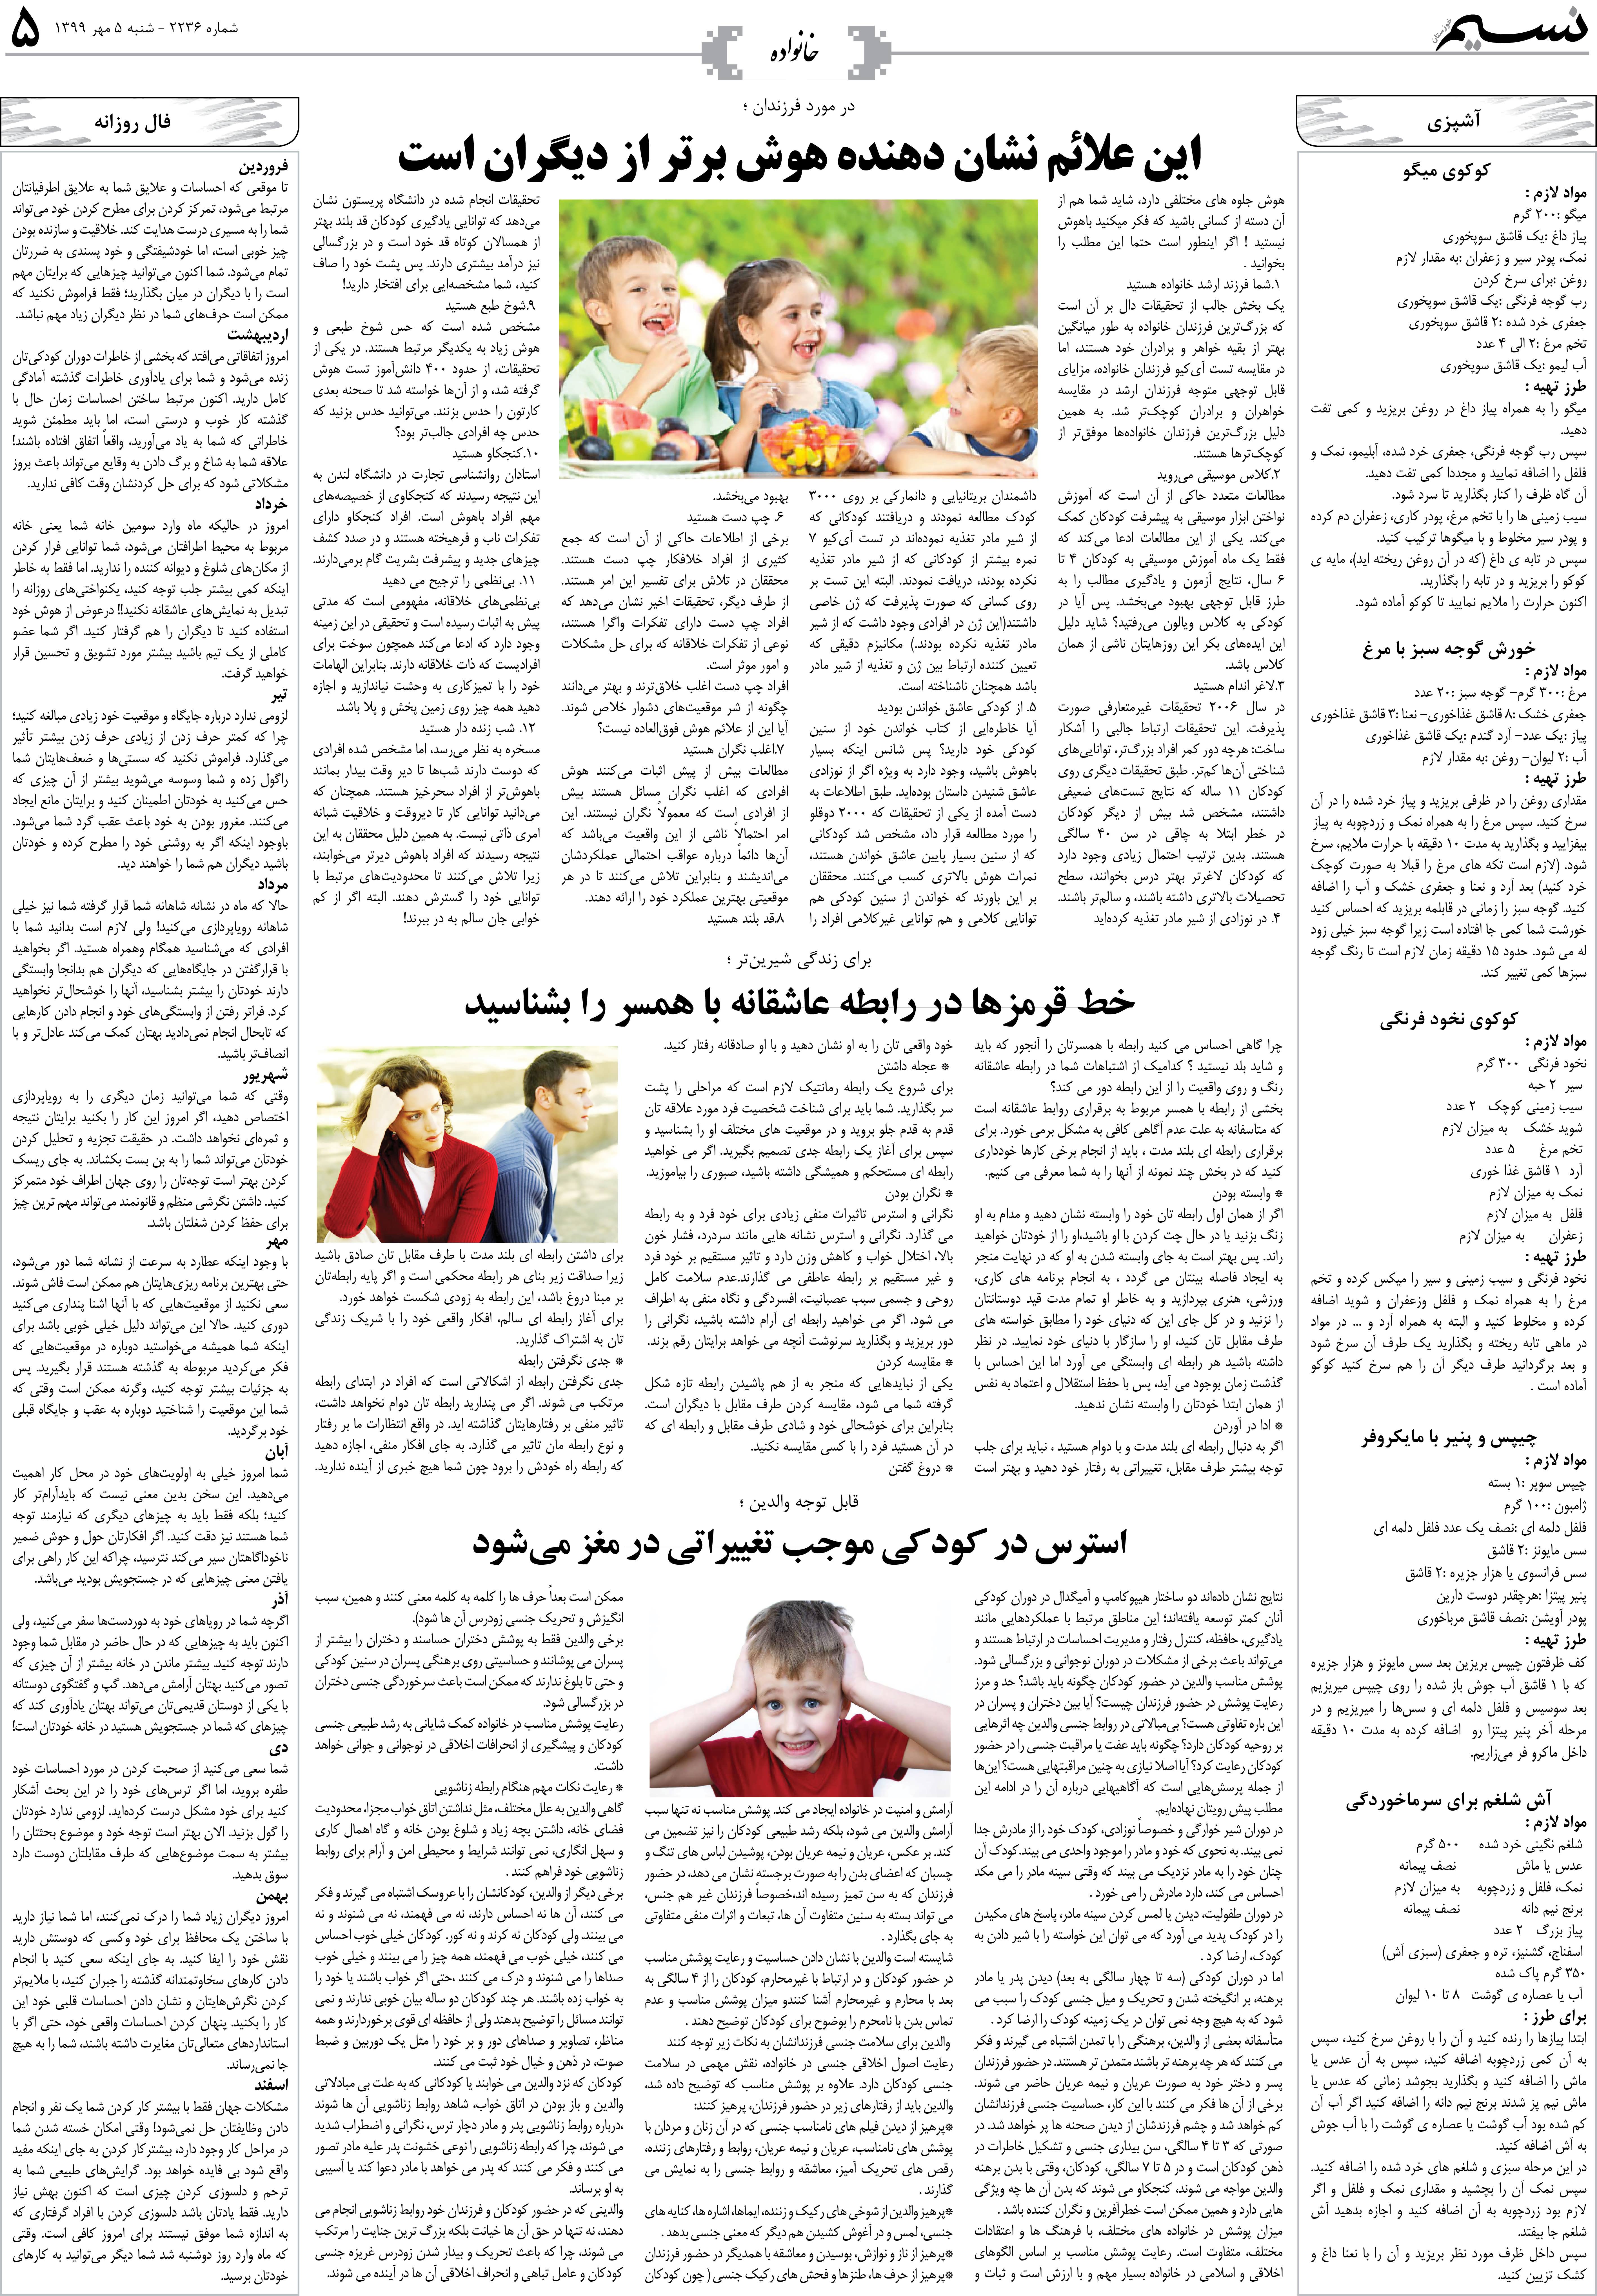 صفحه خانواده روزنامه نسیم شماره 2236